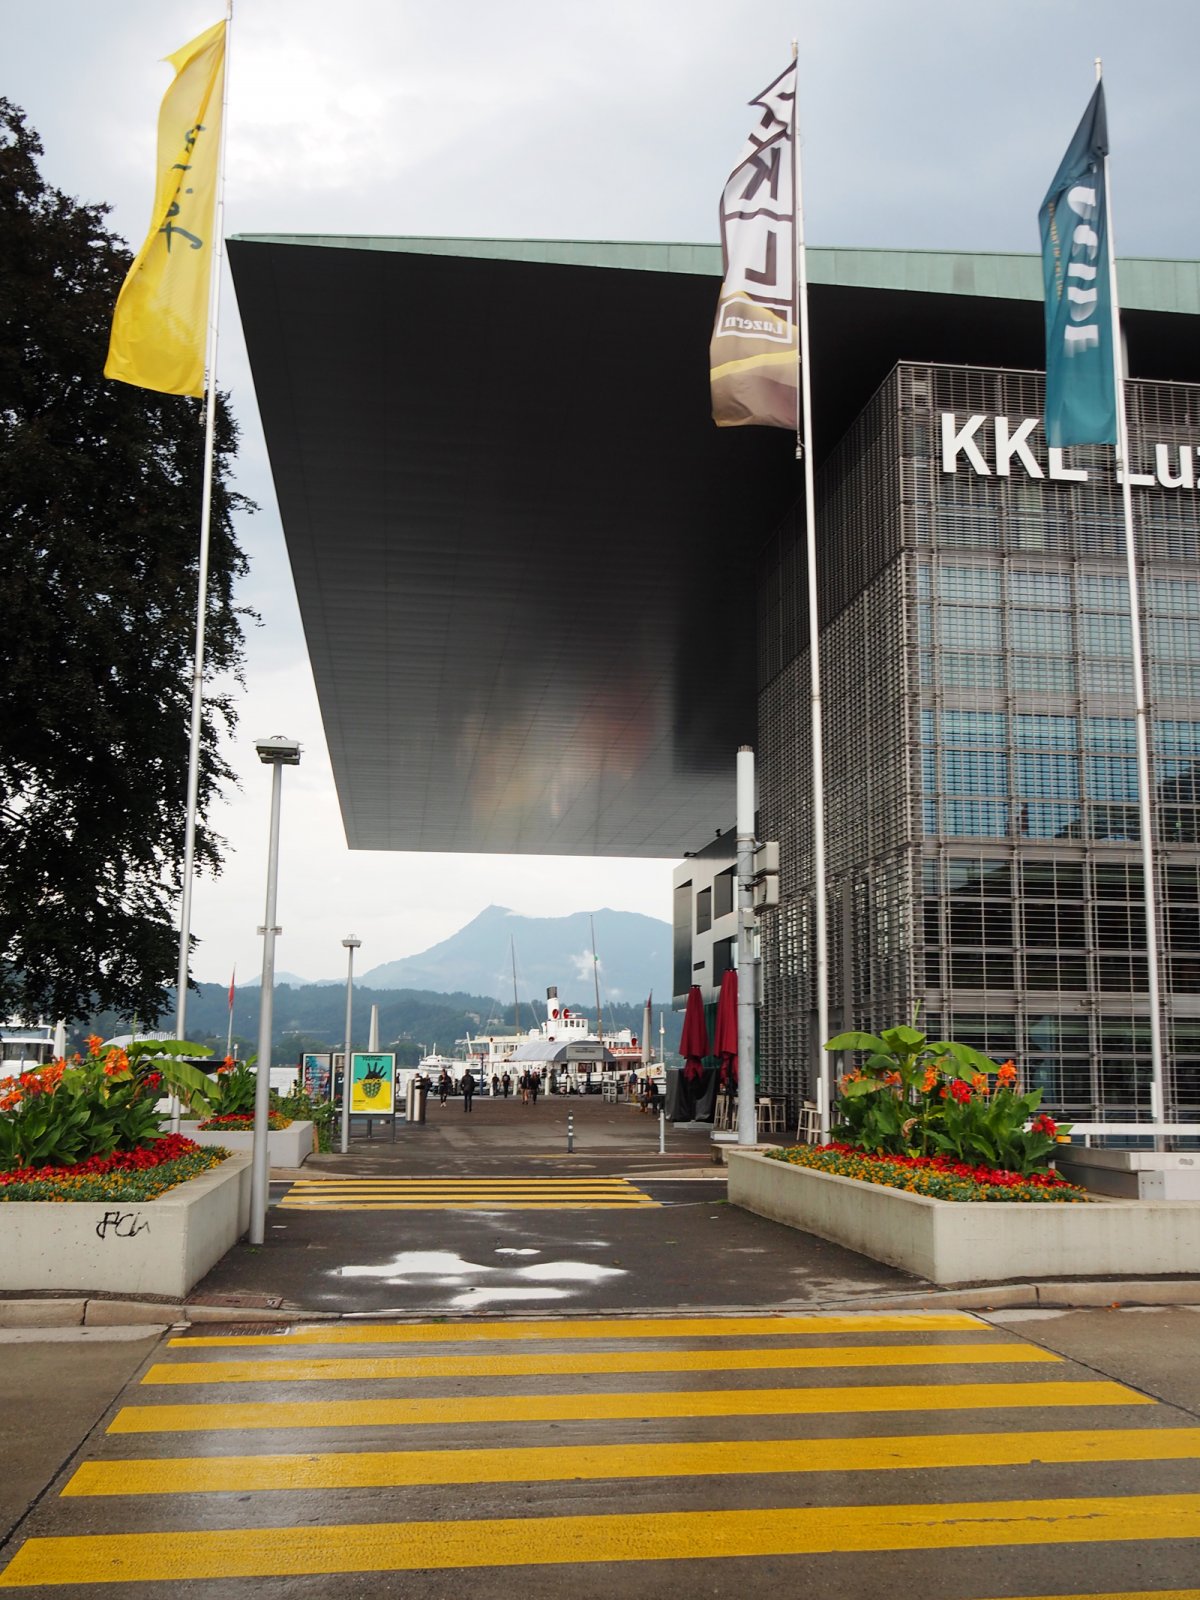 KKL Culture and Congress Centre Lucerne